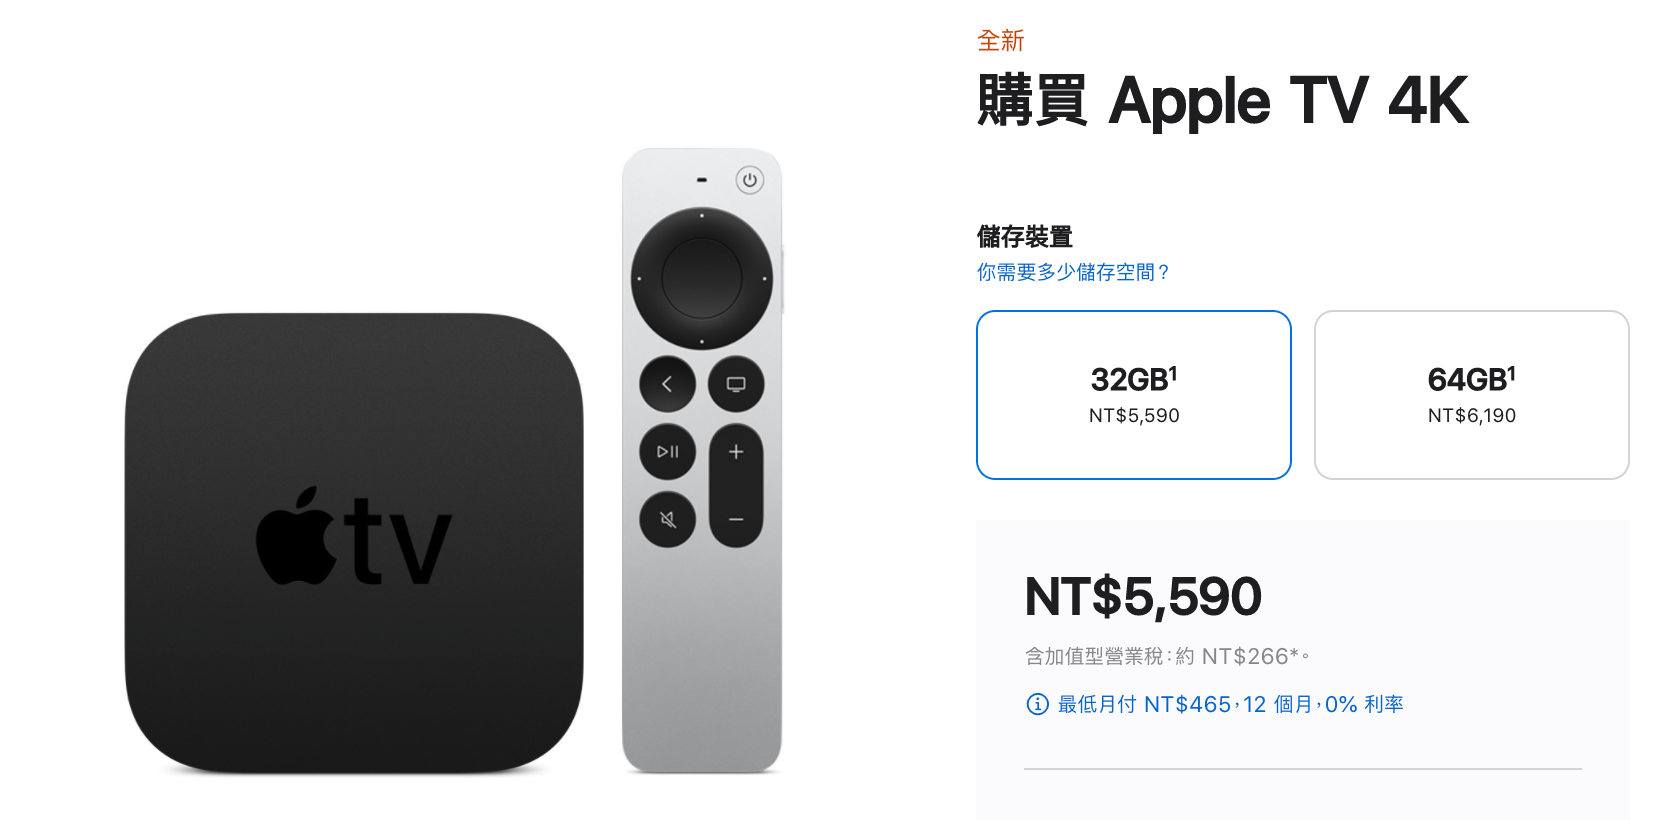 M1 版 iPad Pro、iMac 及 Apple TV 在台灣開賣了！現在訂最快下週 6/10 就可到貨